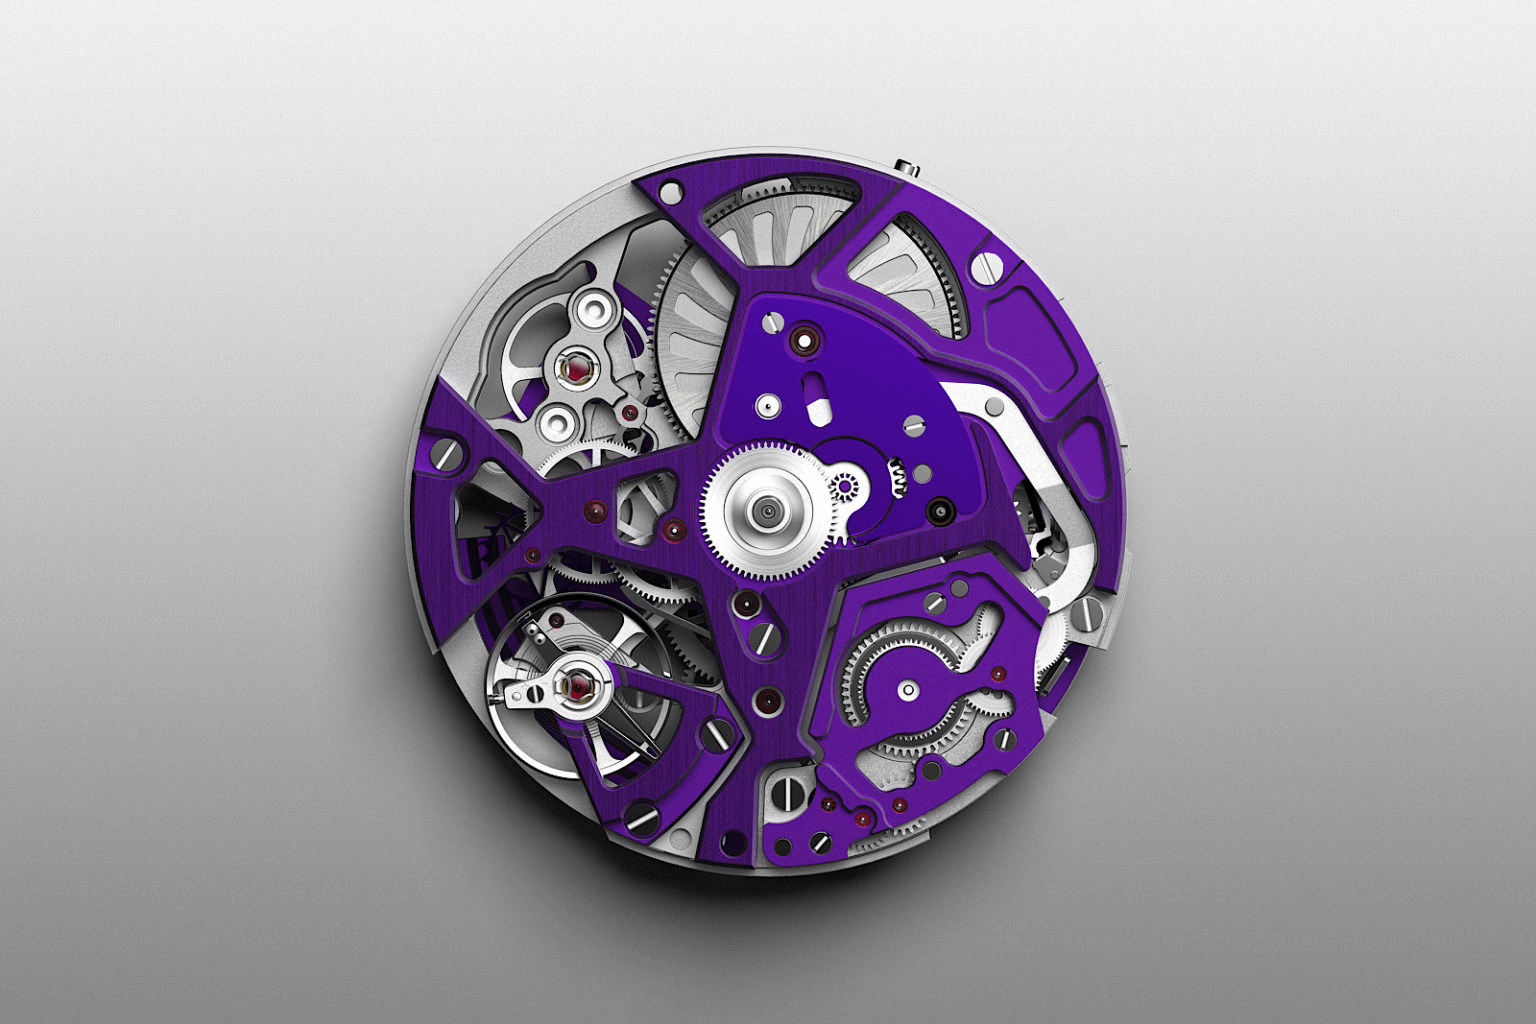 Bánh xe thoát silicon và đòn bẩy màu tím trong bộ máy zenith el primero 9004 đồng hồ defy violet tím